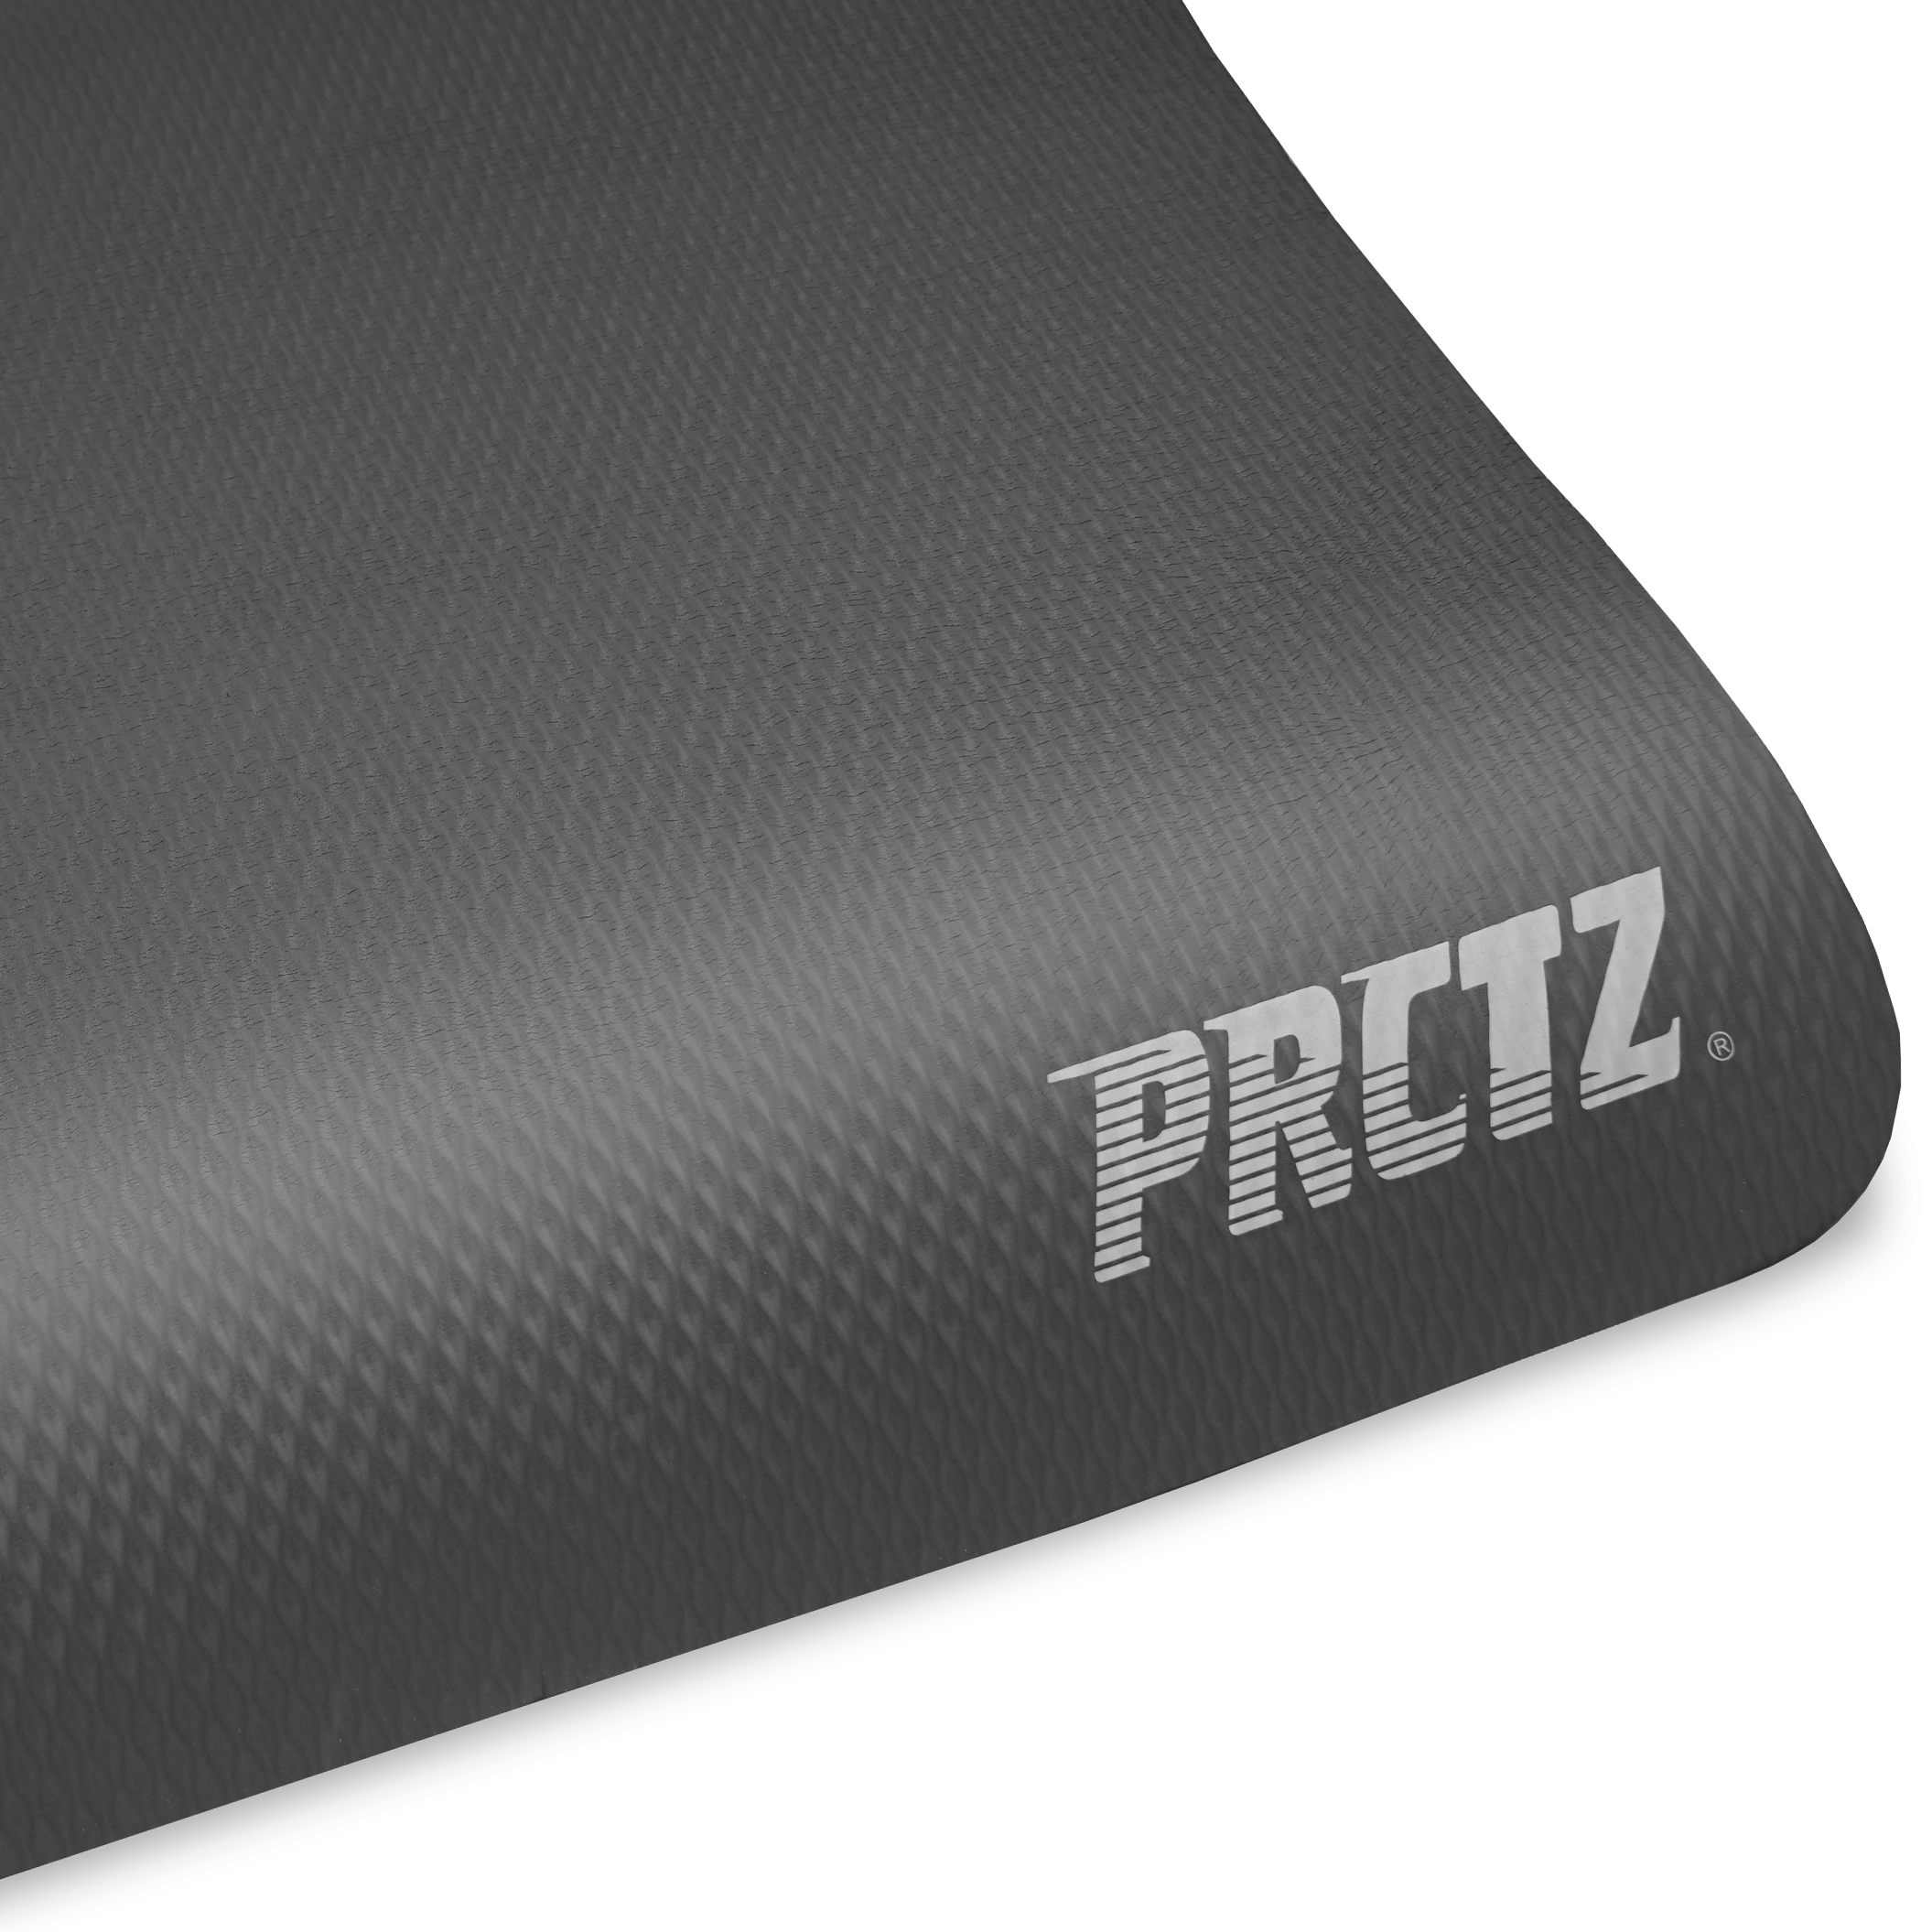 Коврик для фитнеса в комплекте с ремнем-стяжкой PRCTZ PREMIUM EXERCISE MAT, 183х80х1,2см. с гарантией